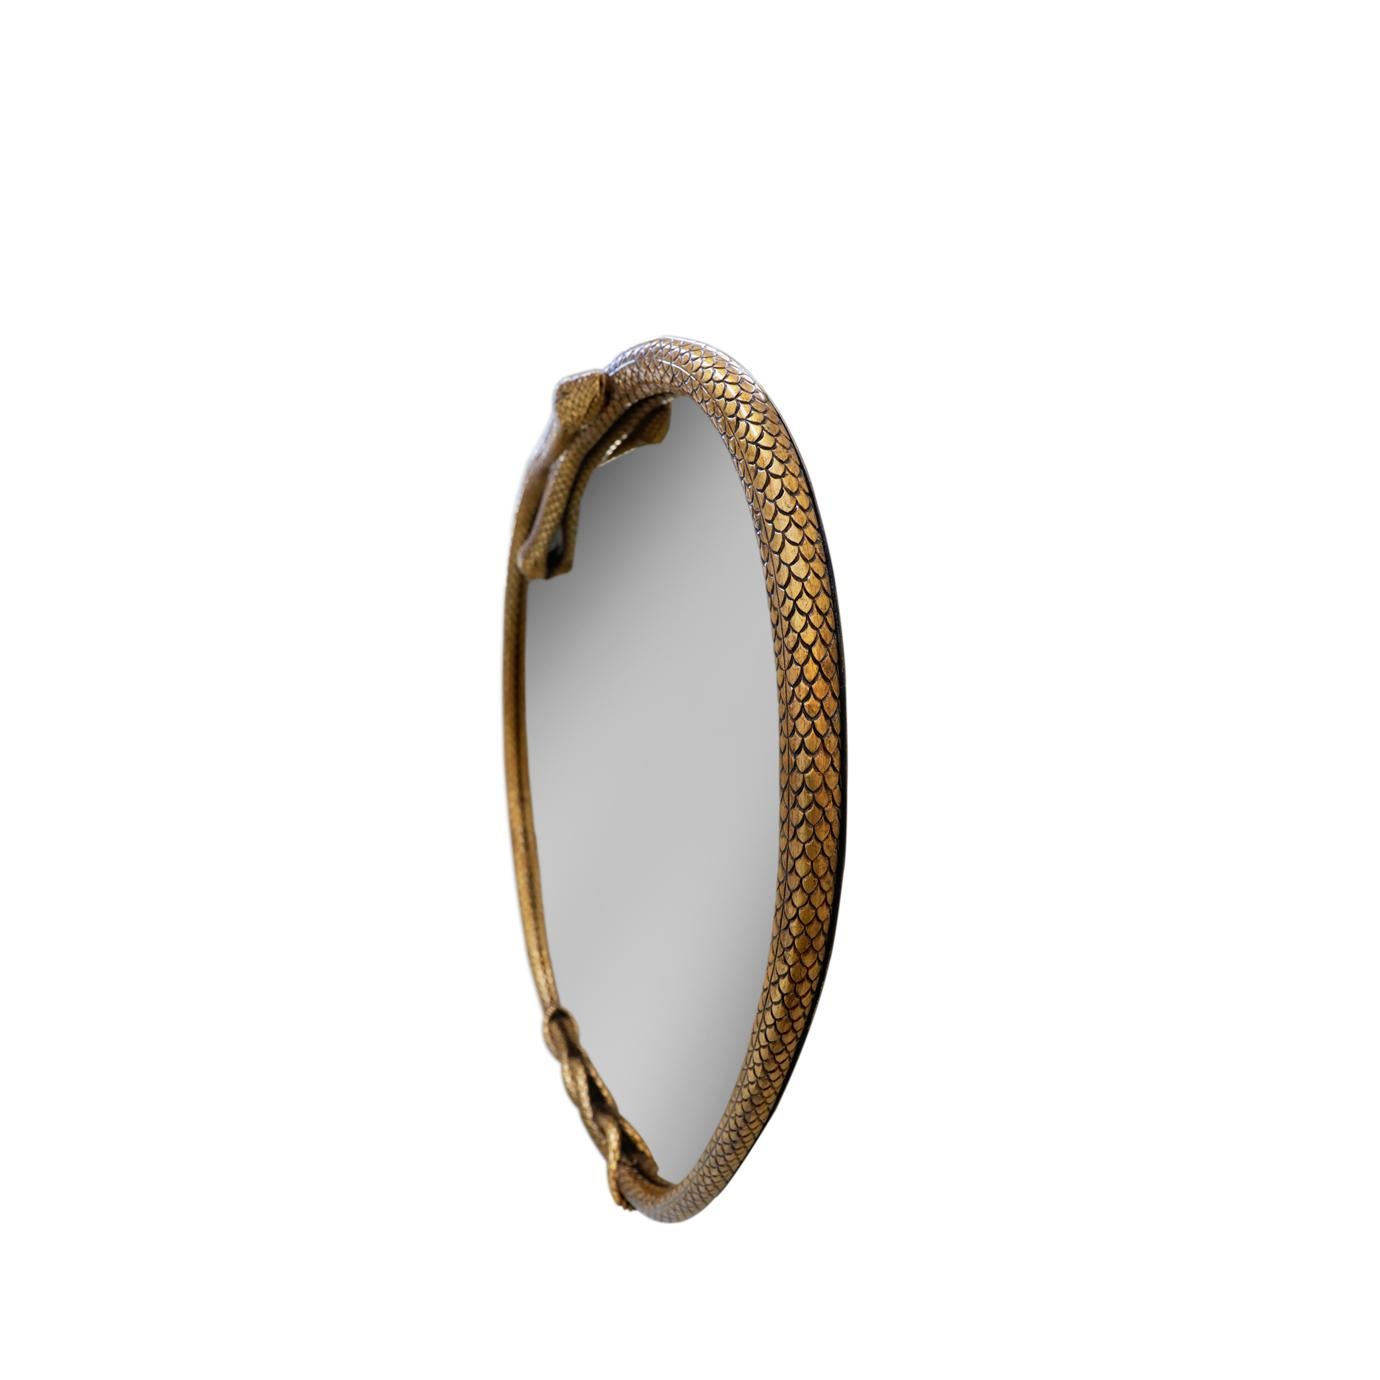 Le miroir en forme de pomme du Serpentine II vous transforme. Encadré de deux formes de serpents entrelacés en bois sculpté à la main, ce miroir est le moyen idéal d'ajouter une touche d'exotisme à tout intérieur.